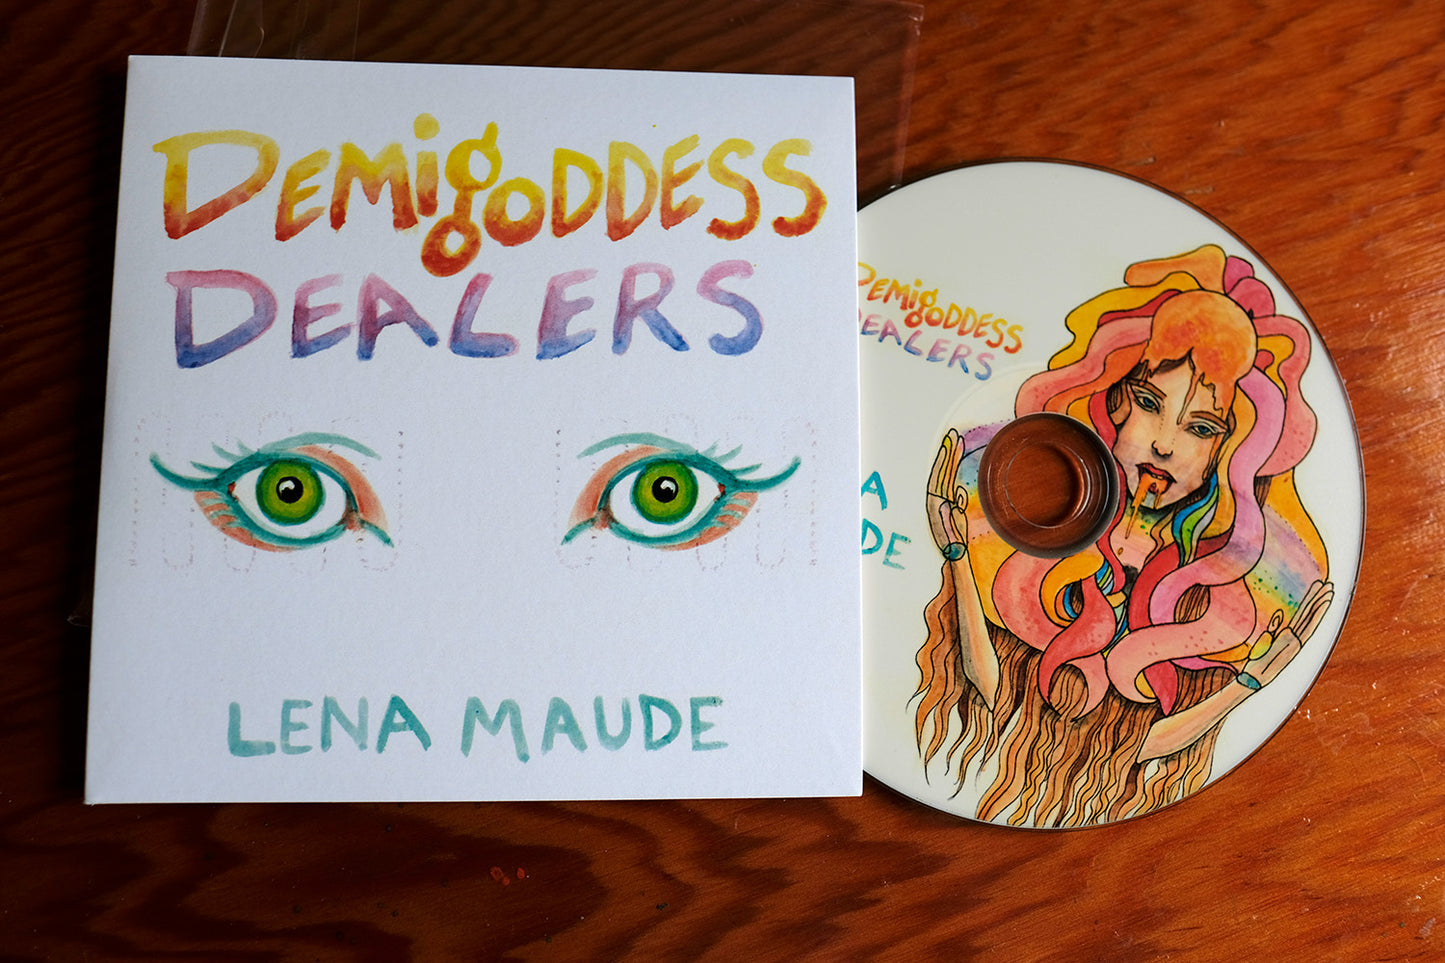 Demigoddess Dealers CD